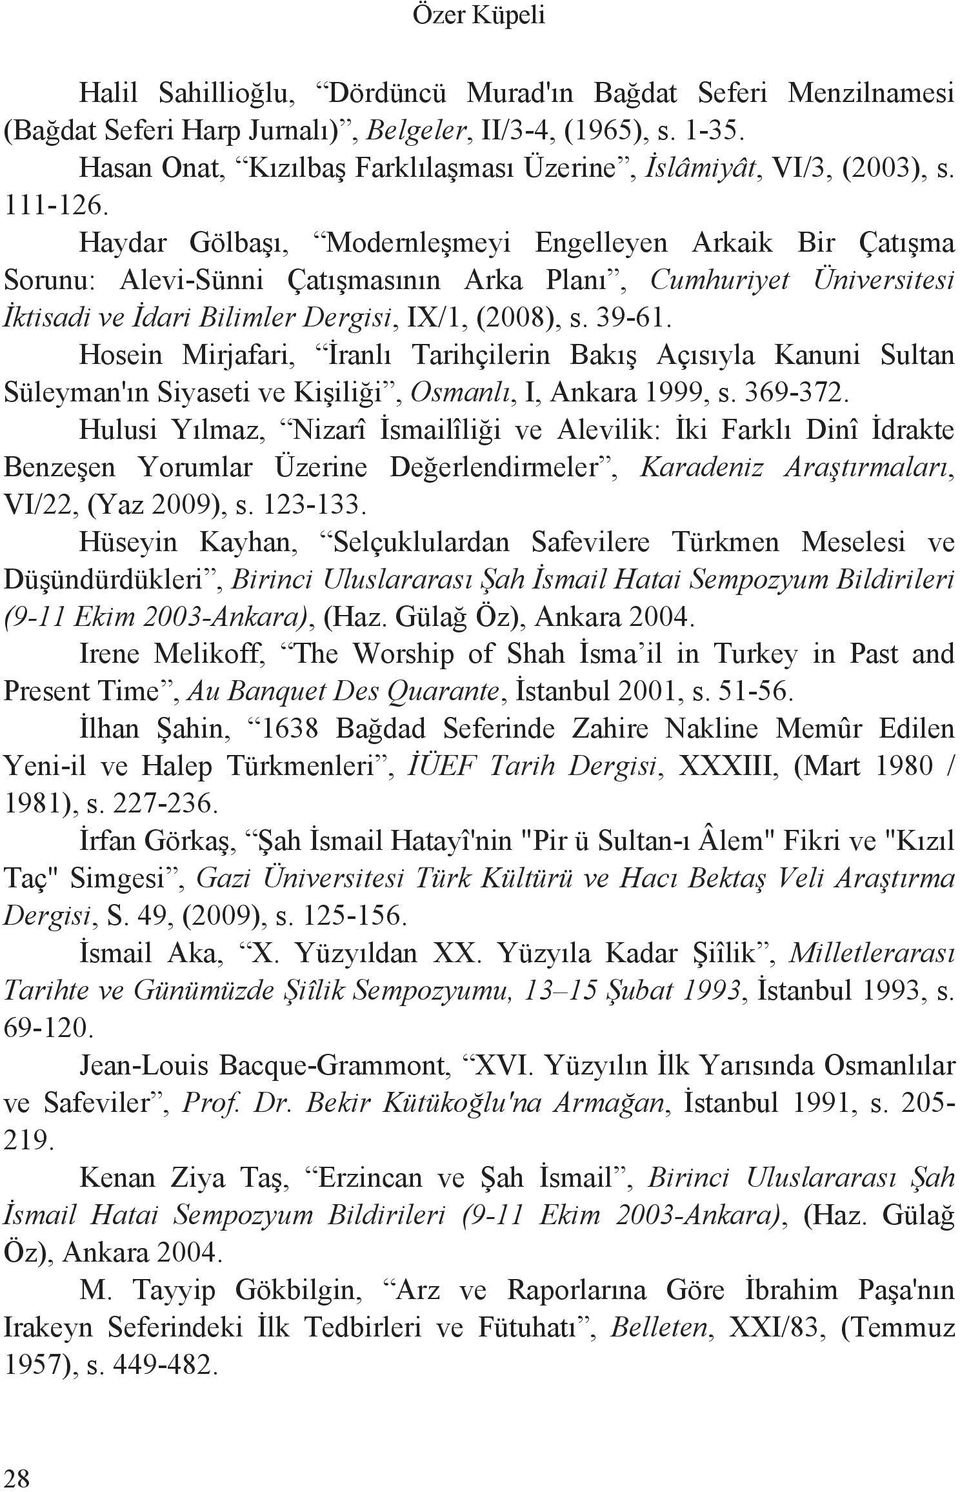 Haydar Gölba, Modernle meyi Engelleyen Arkaik Bir Çat ma Sorunu: Alevi-Sünni Çat mas n n Arka Plan, Cumhuriyet Üniversitesi ktisadi ve dari Bilimler Dergisi, IX/1, (2008), s. 39-61.